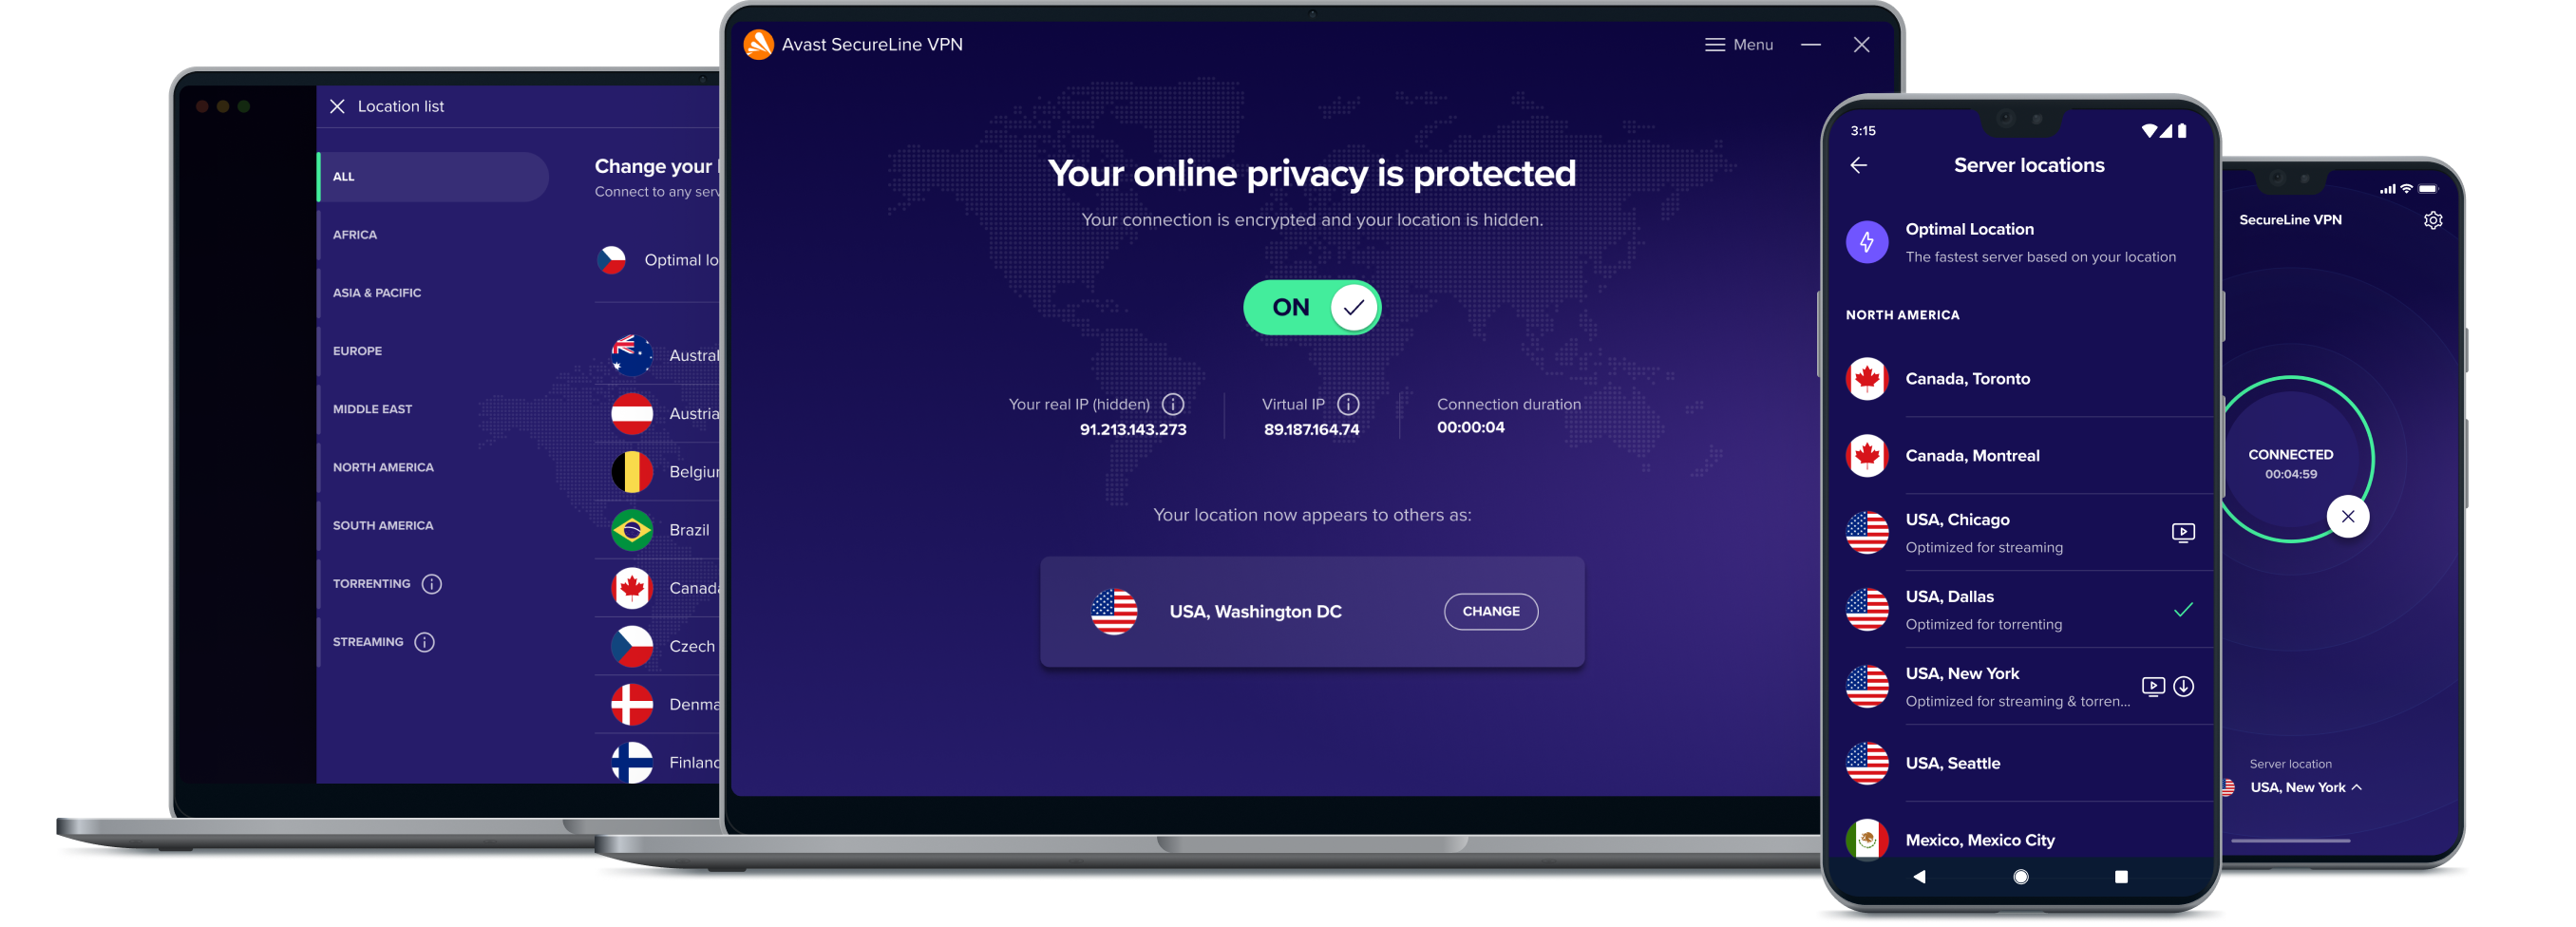 Tenha mais liberdade online com nosso serviço de VPN